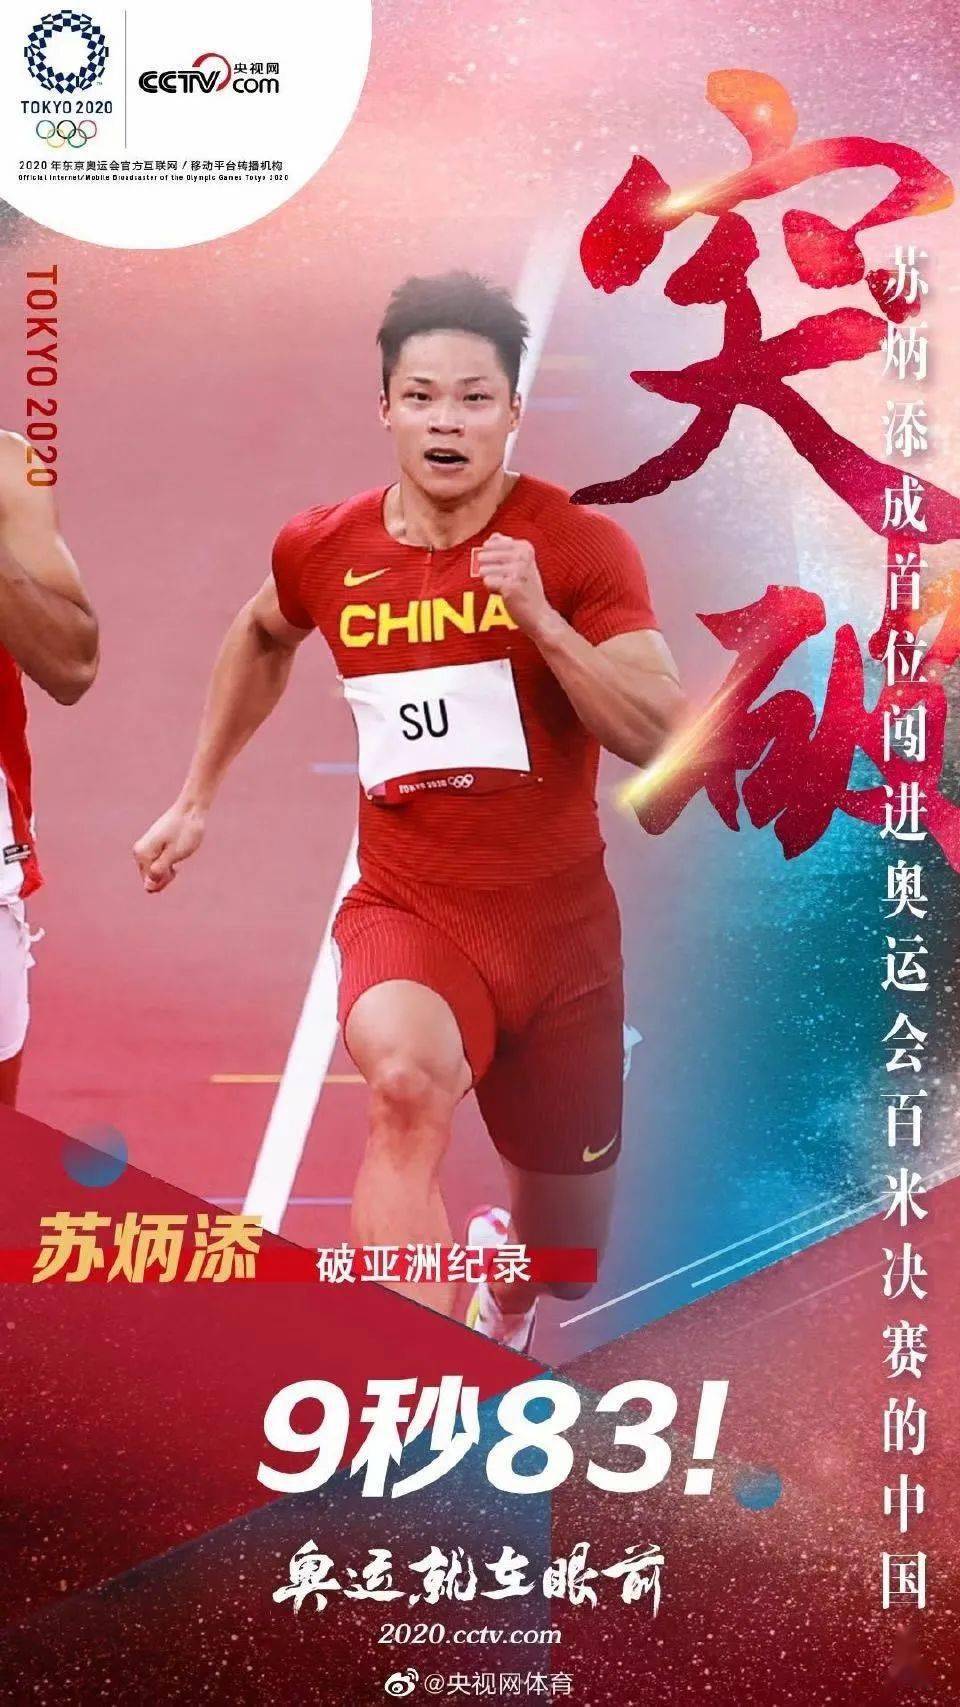 破世界记录?是体育精神,更是中国精神!